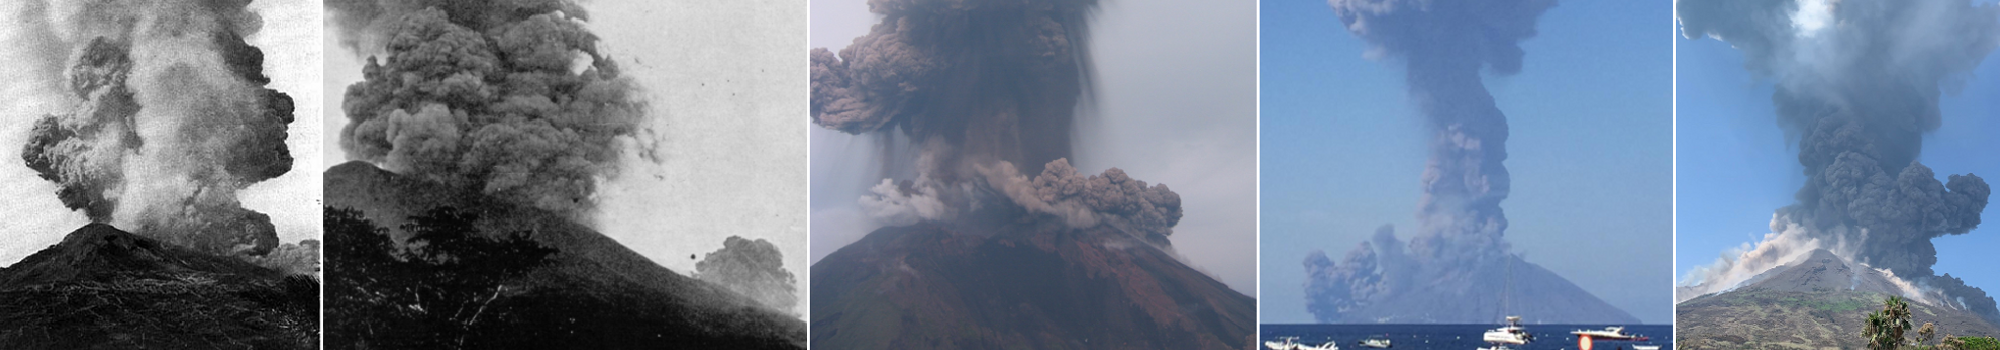 Stromboli - immagini storiche di eruzioni